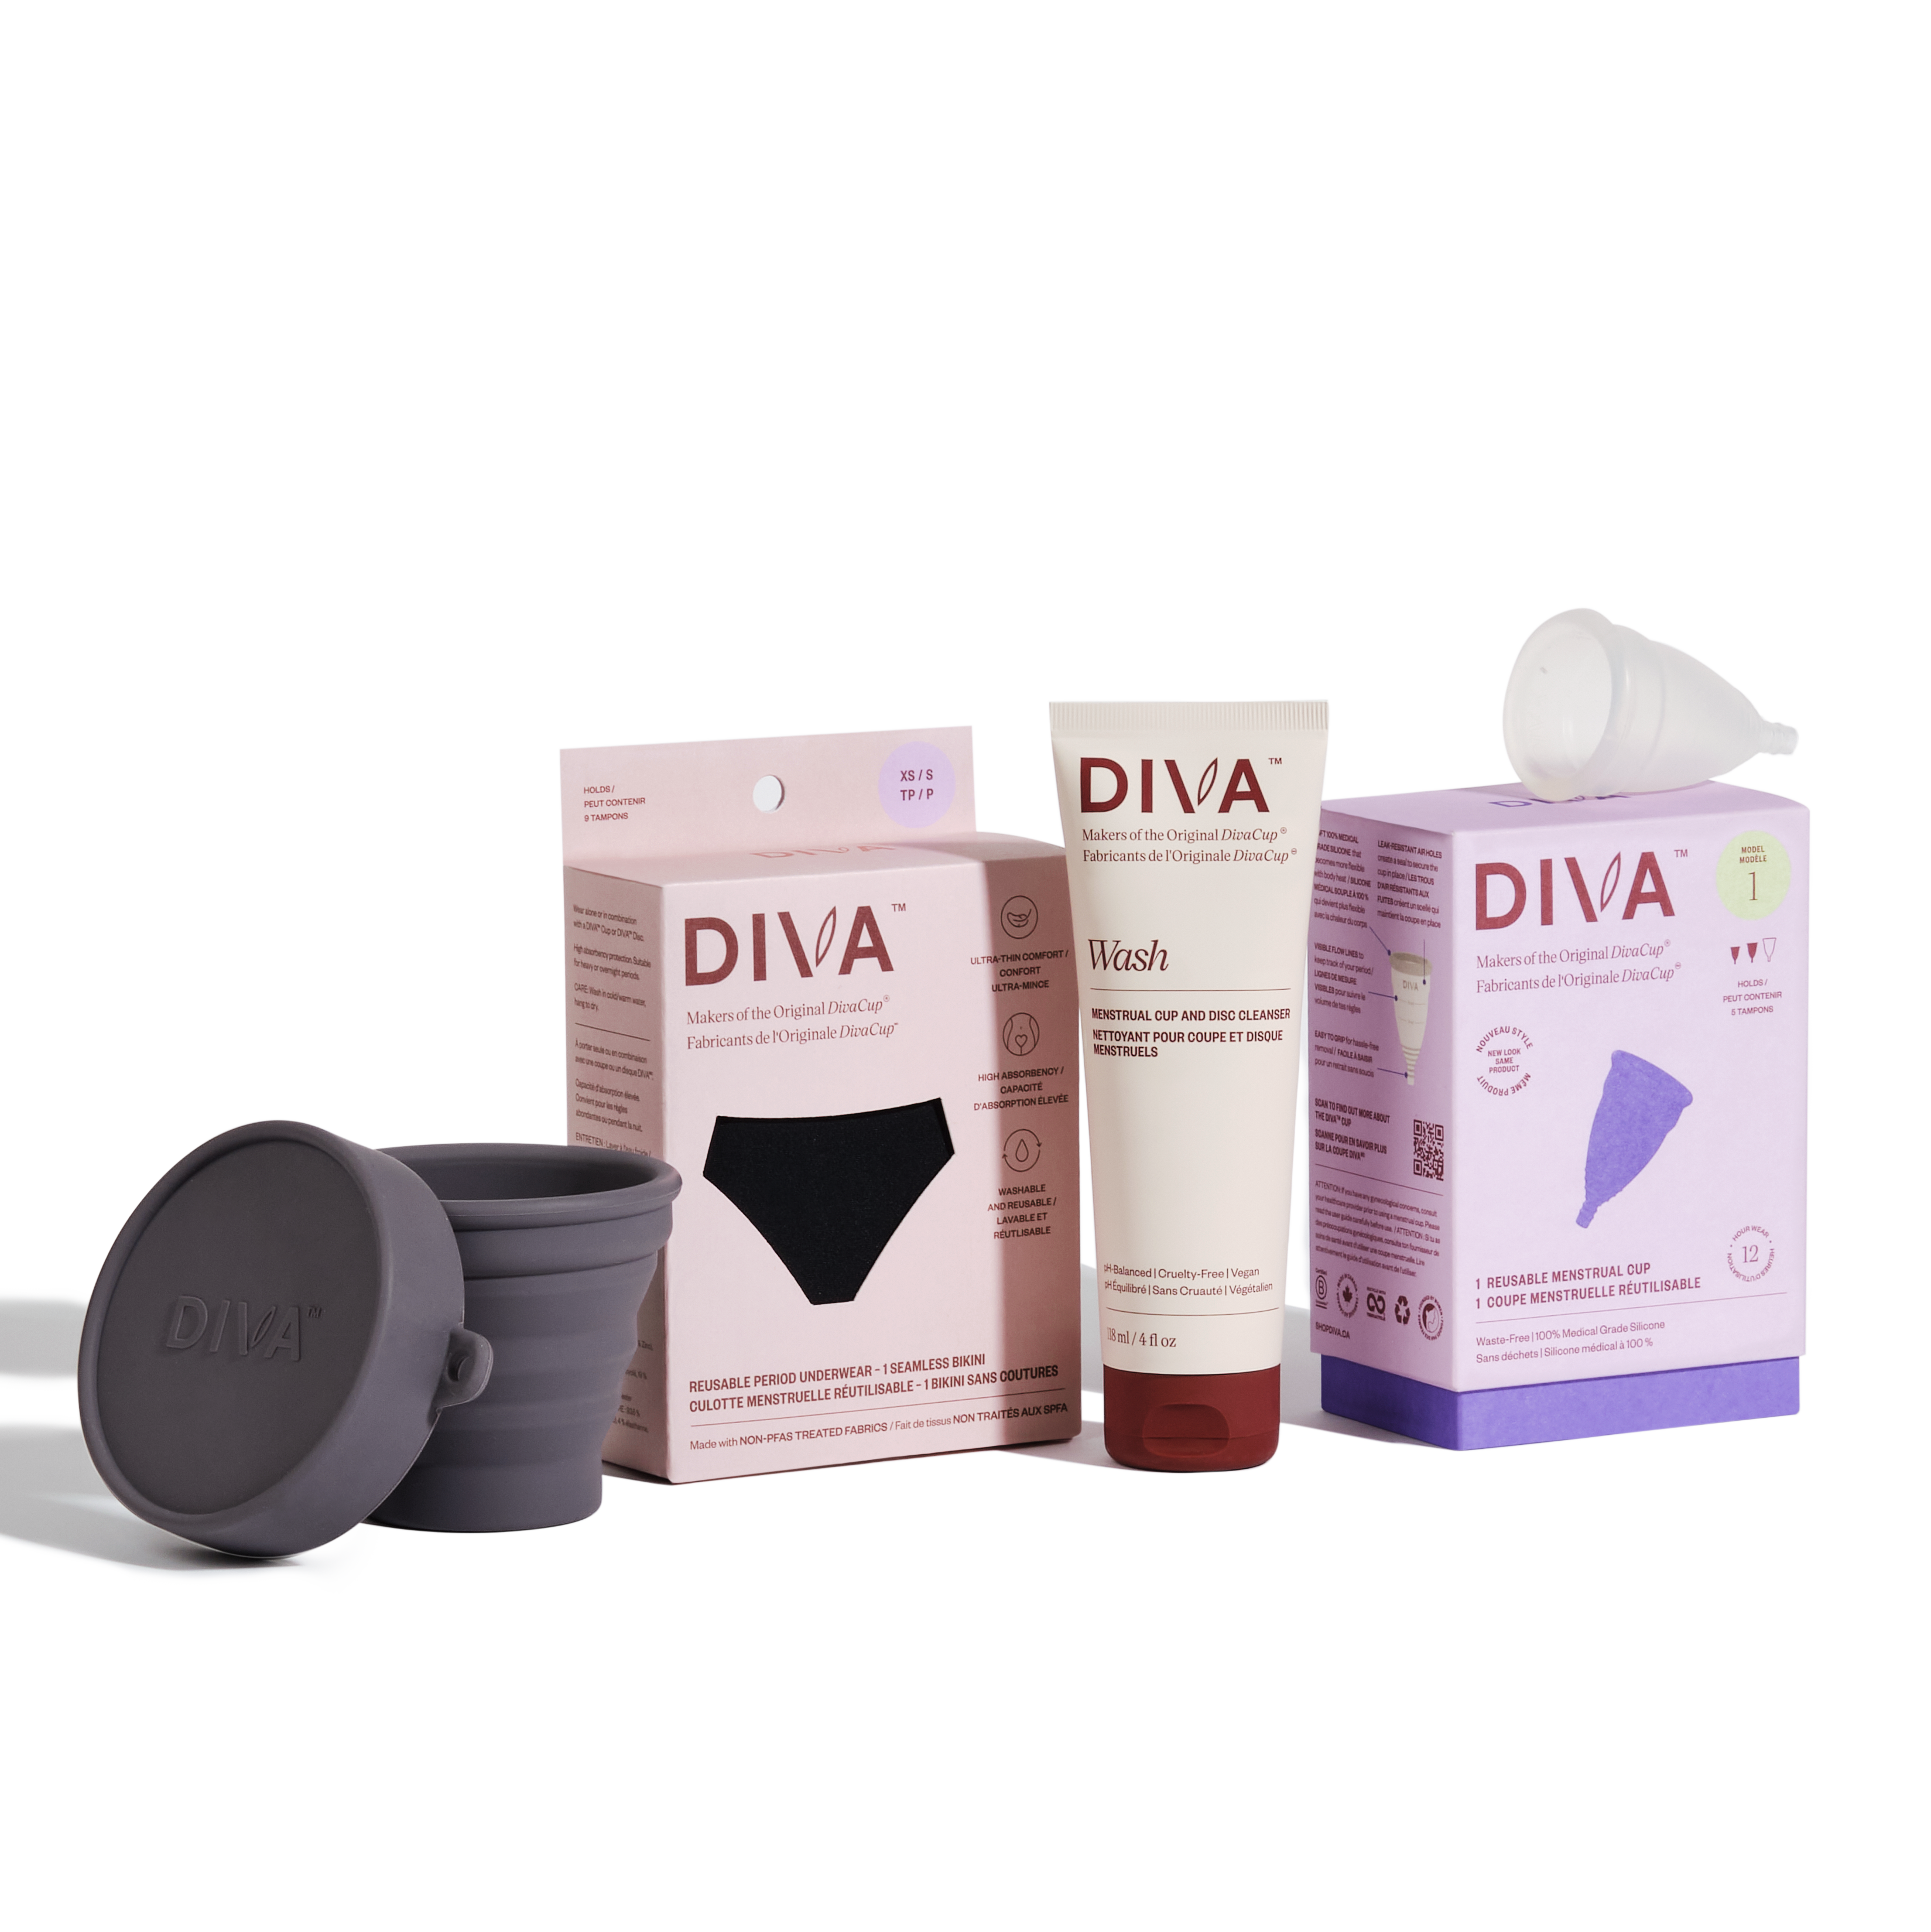 Period Underwear Bundle  DIVA™ Cup and Period Underwear Bundle